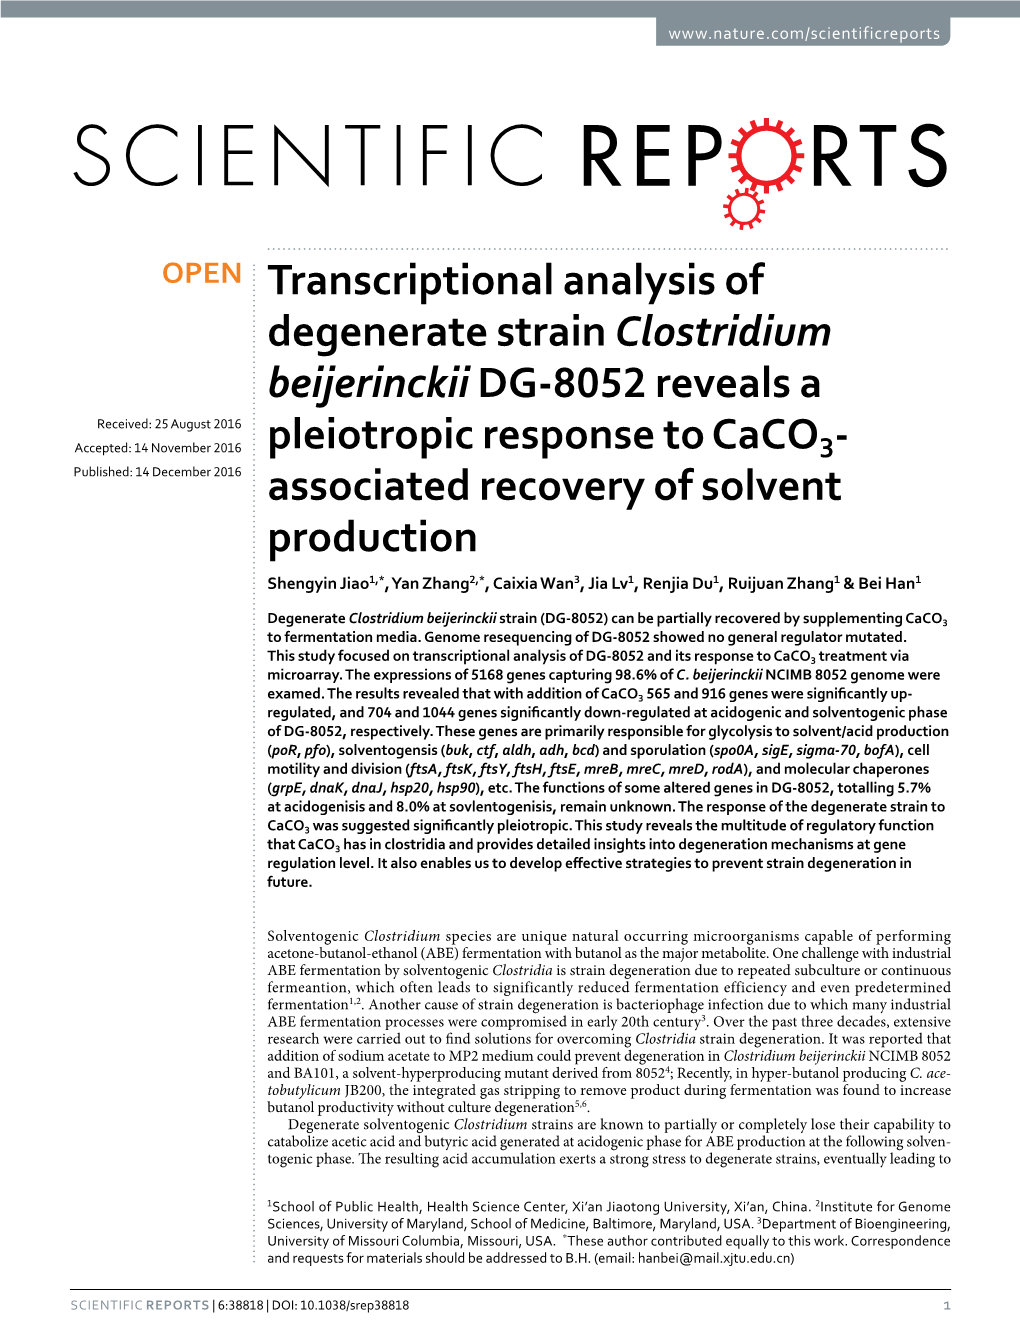 Transcriptional Analysis of Degenerate Strain Clostridium Beijerinckii DG